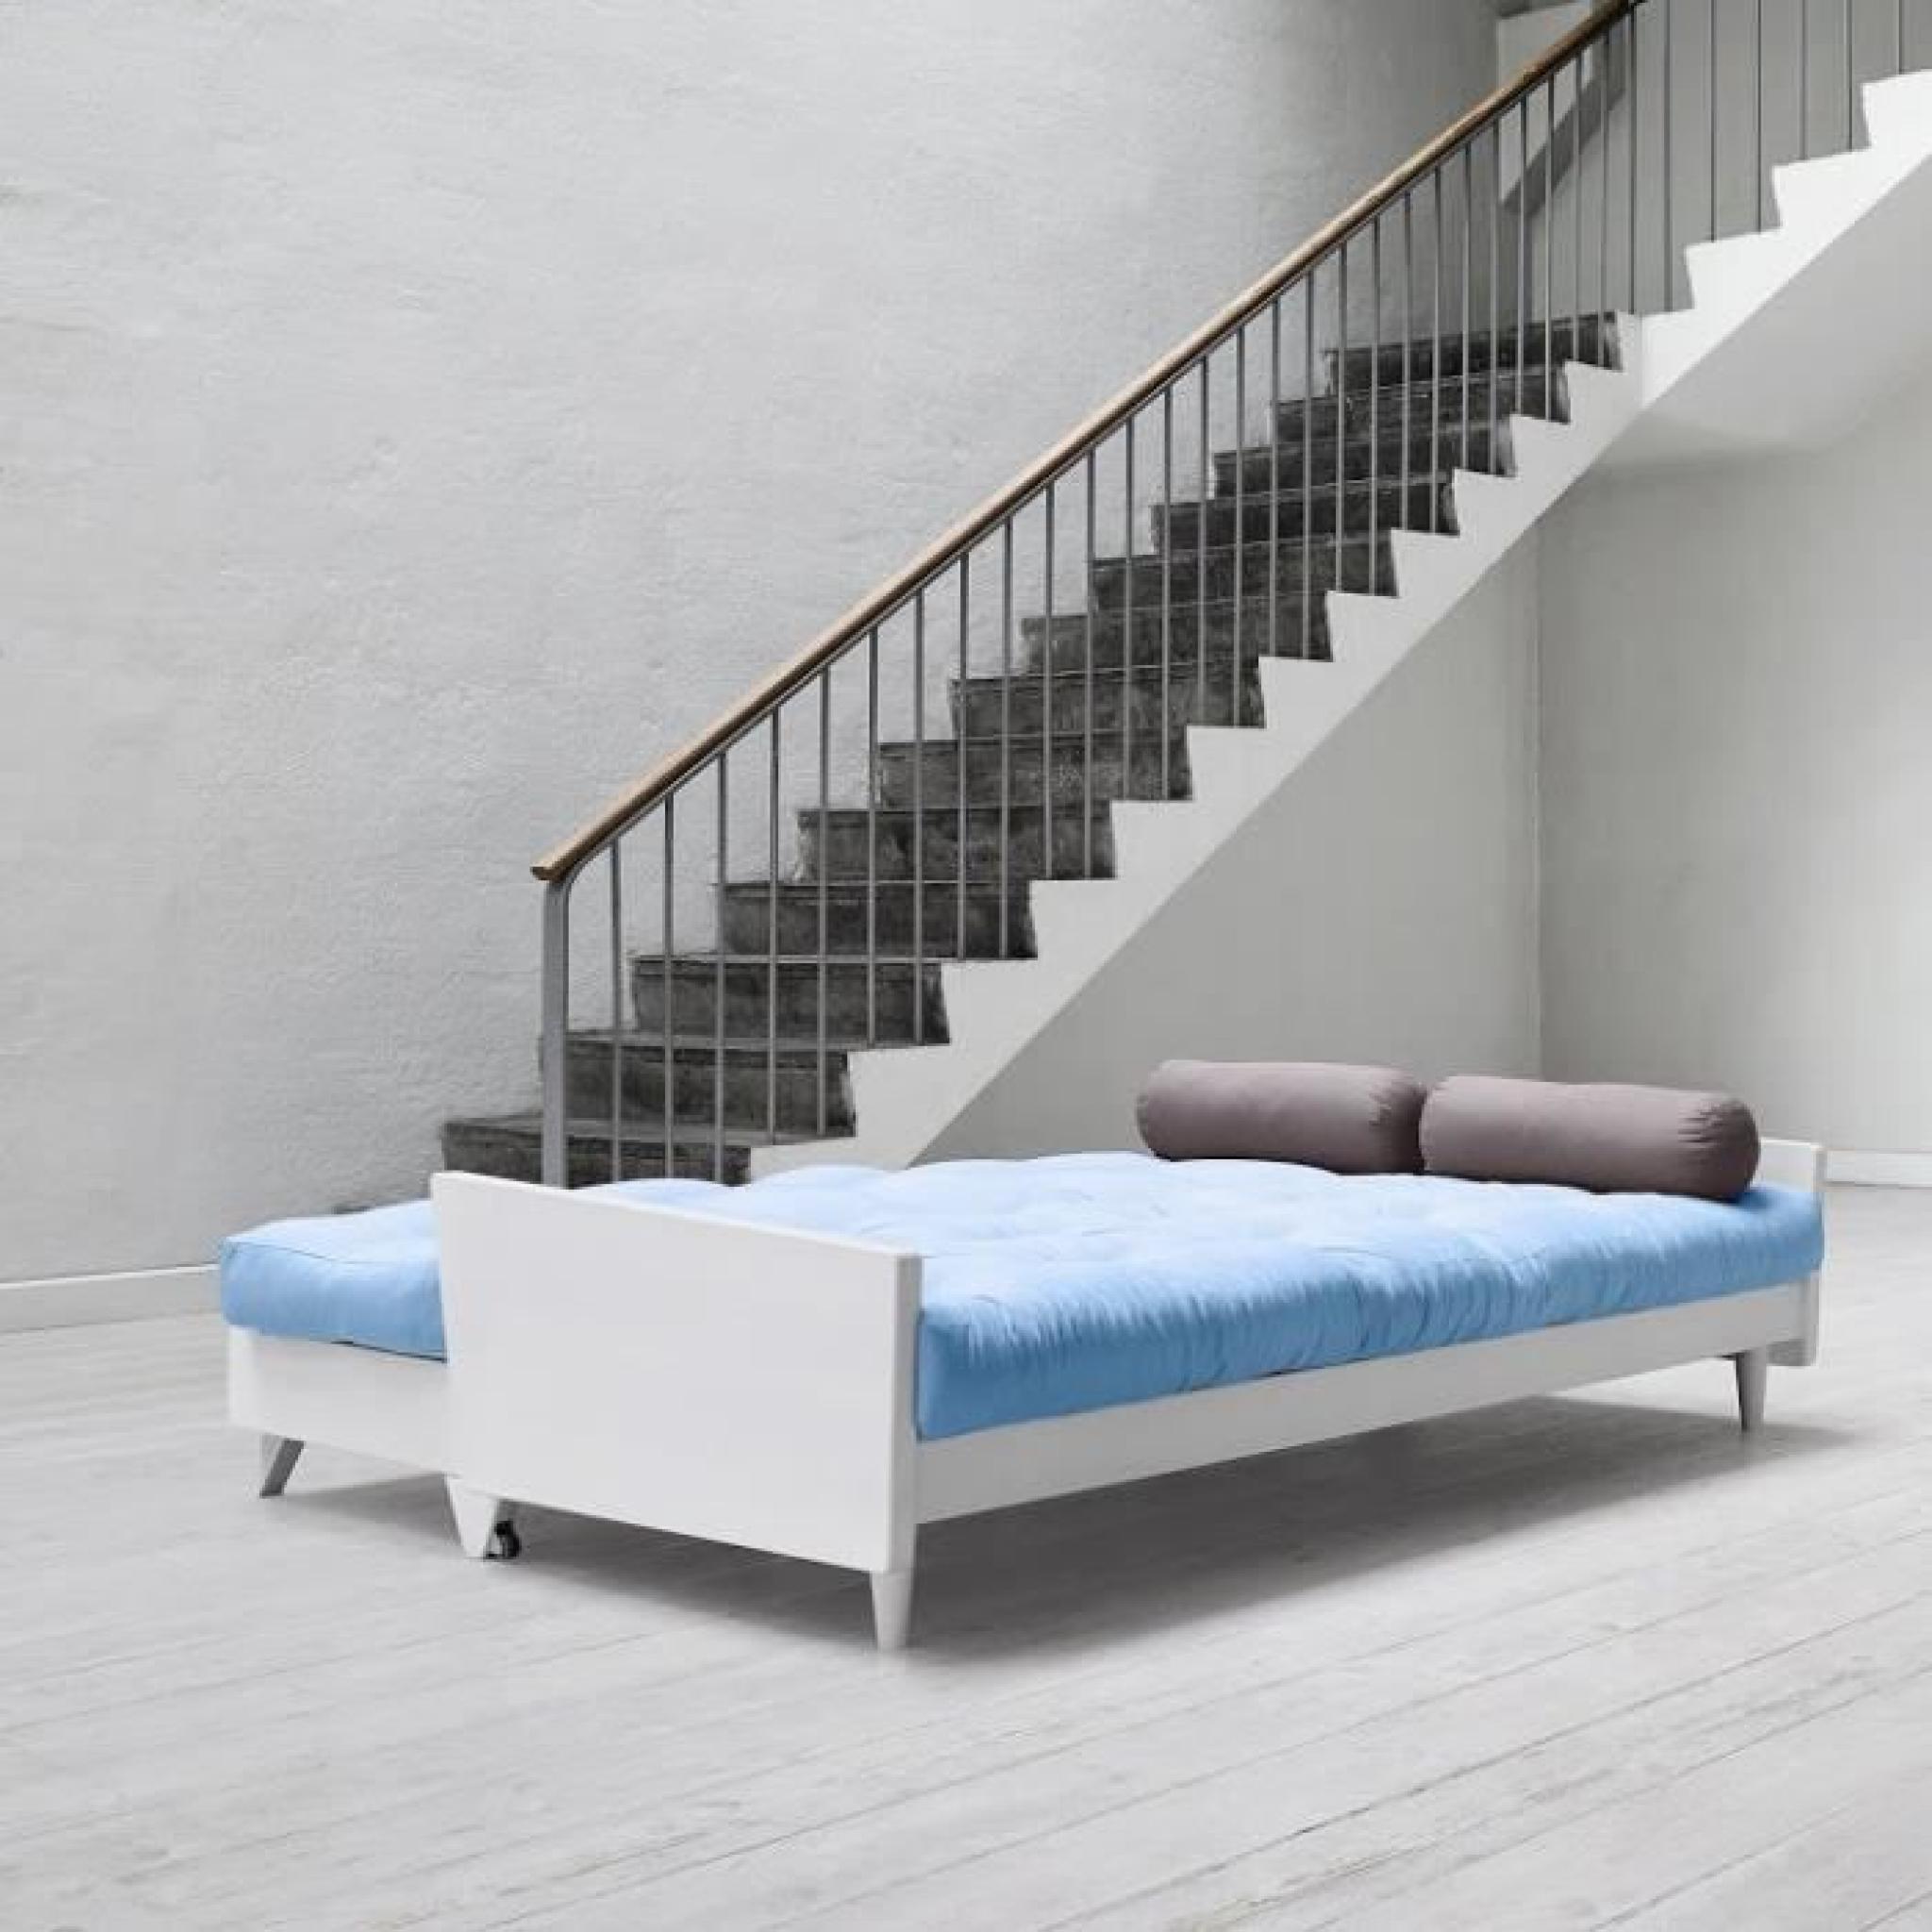 Canapé blanc 3/4 places convertible INDIE futon bleu celeste couchage 130*190cm pas cher